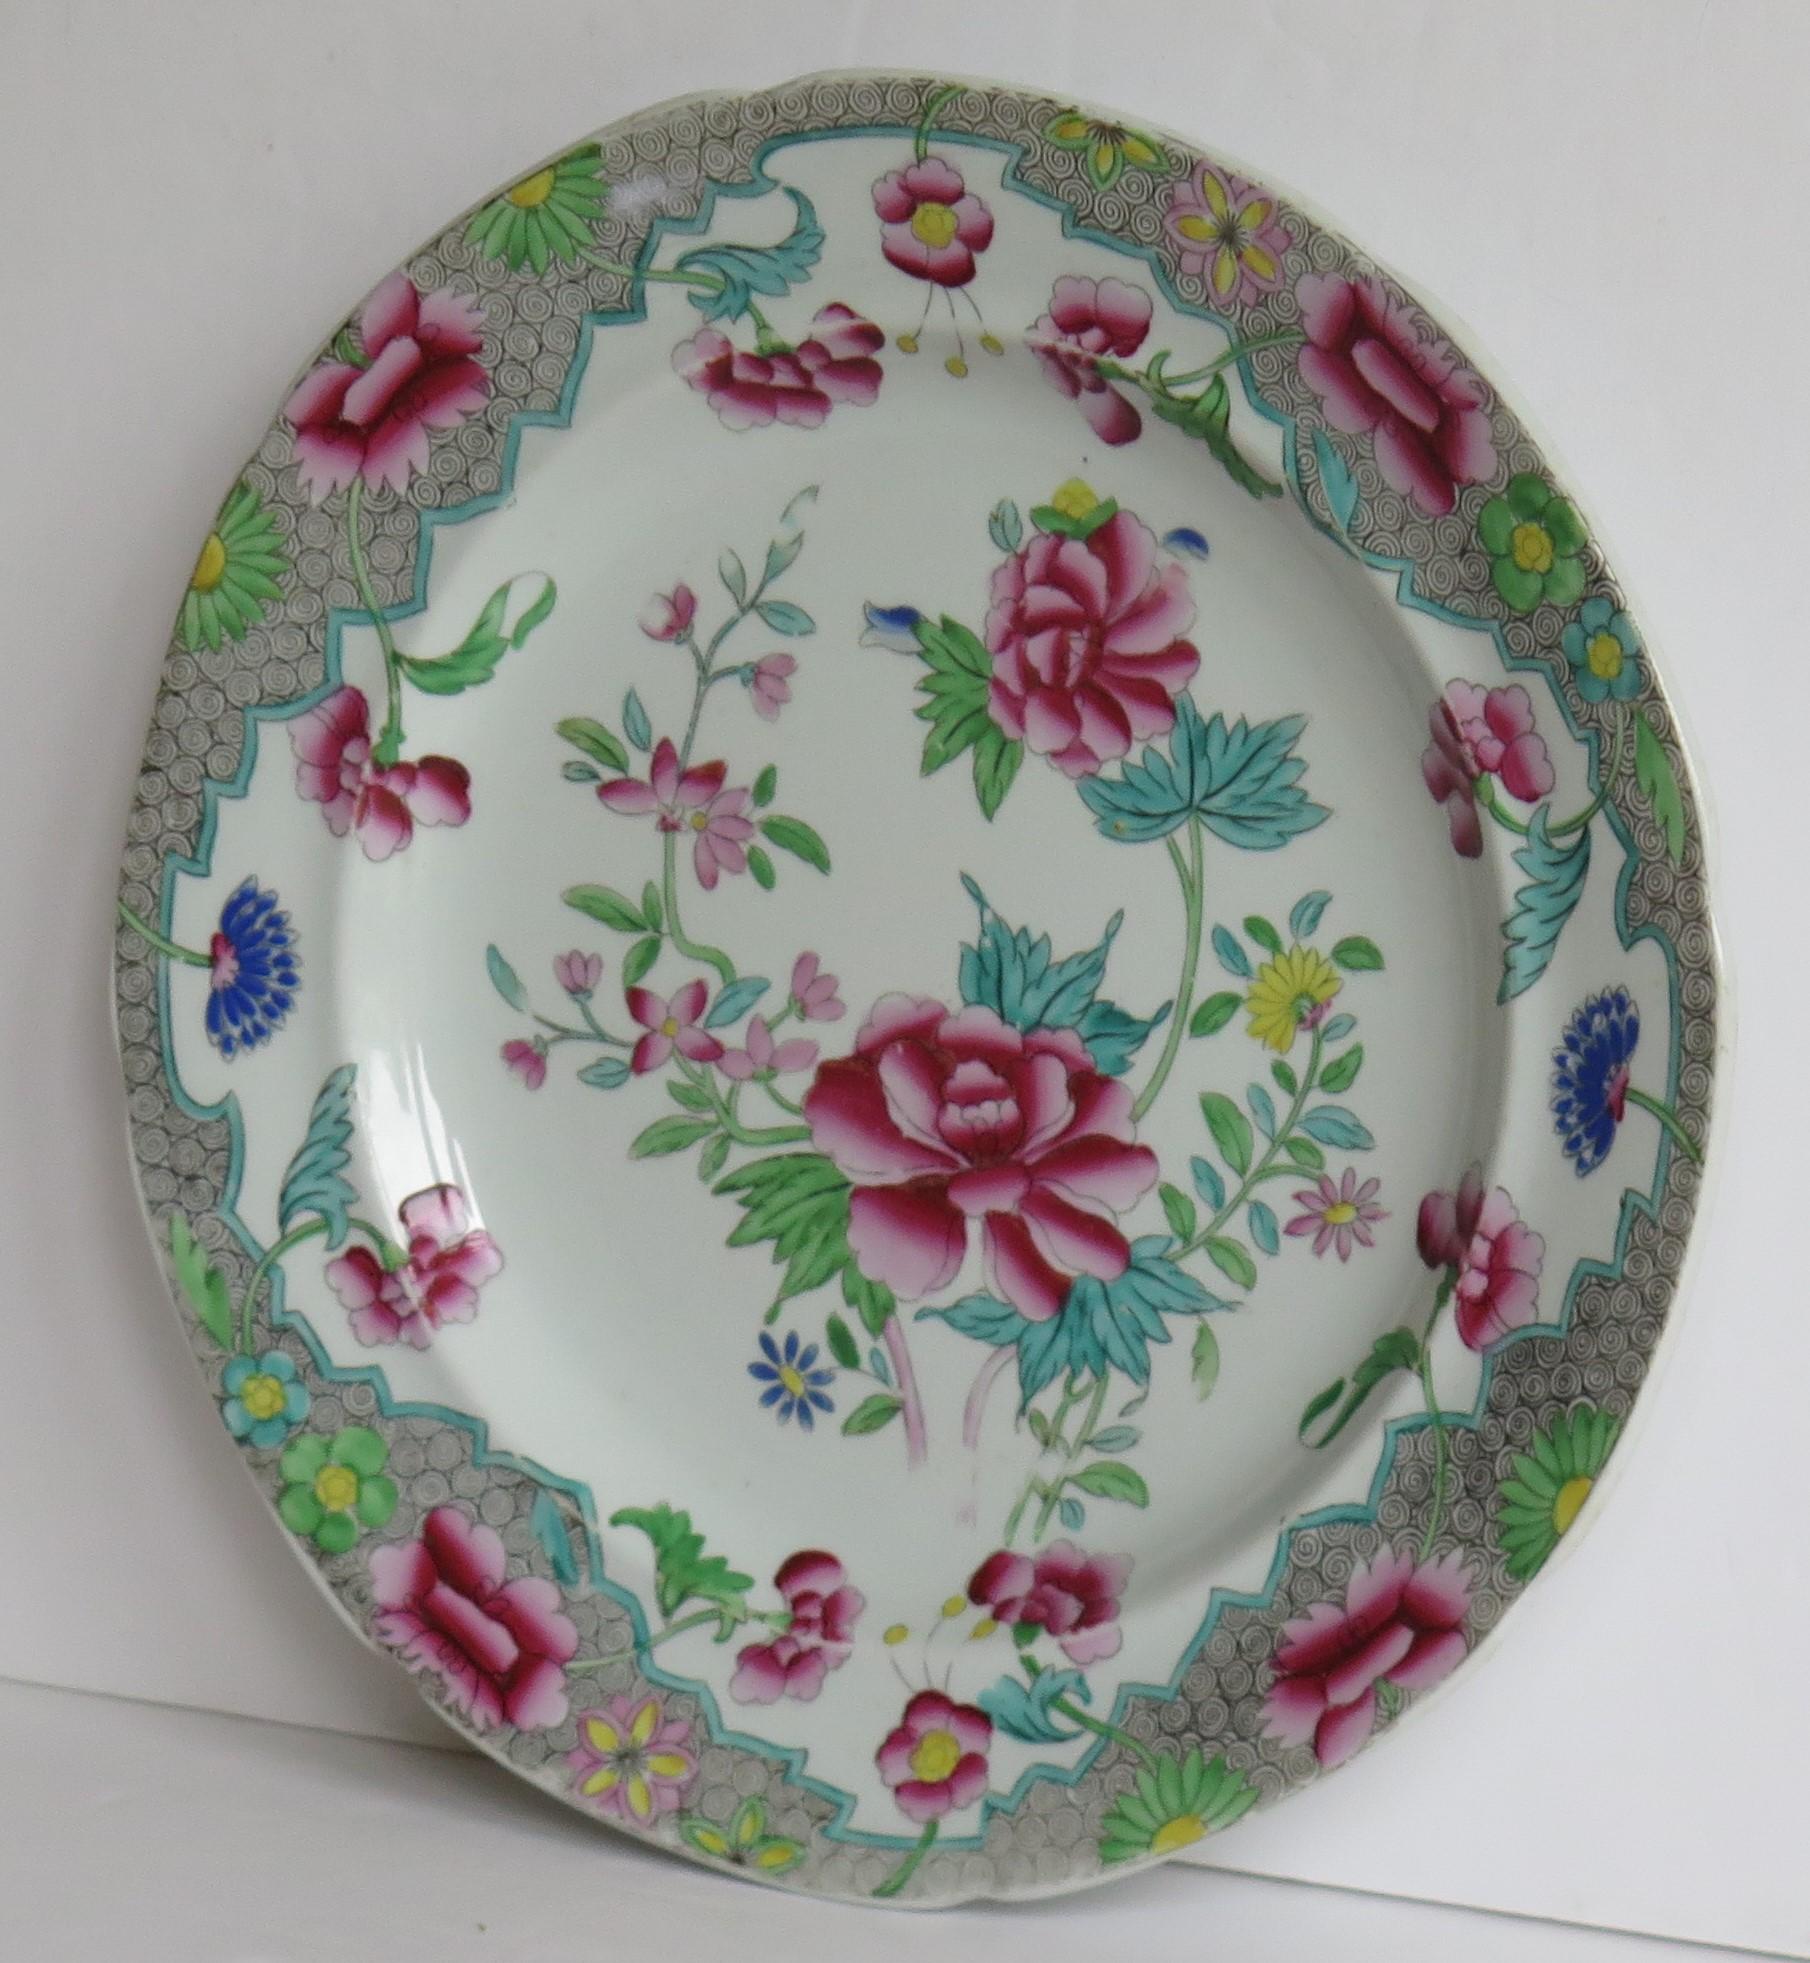 Il s'agit d'un bon plat d'appoint en pierre de fer au motif floral peint à la main n° 8, fabriqué par Hicks and Meigh de Shelton, Staffordshire, Angleterre entre 1812 et 1822, vers 1815.

L'assiette est bien empotée et son bord est